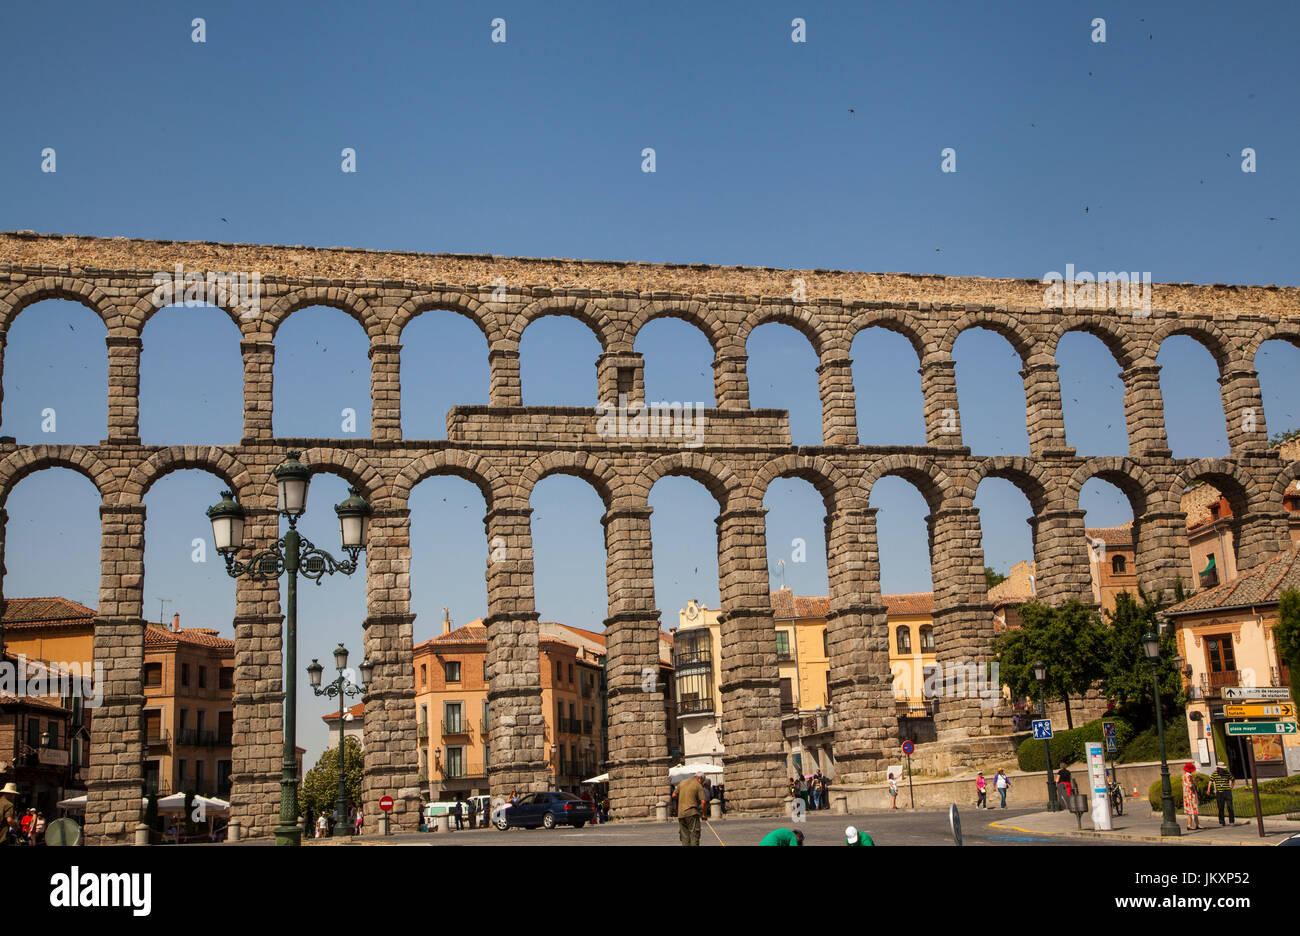 L'aqueduc romain dans la ville espagnole de Barcelone qui est un site classé au patrimoine mondial dans la région de Castilla y Leon Espagne Banque D'Images